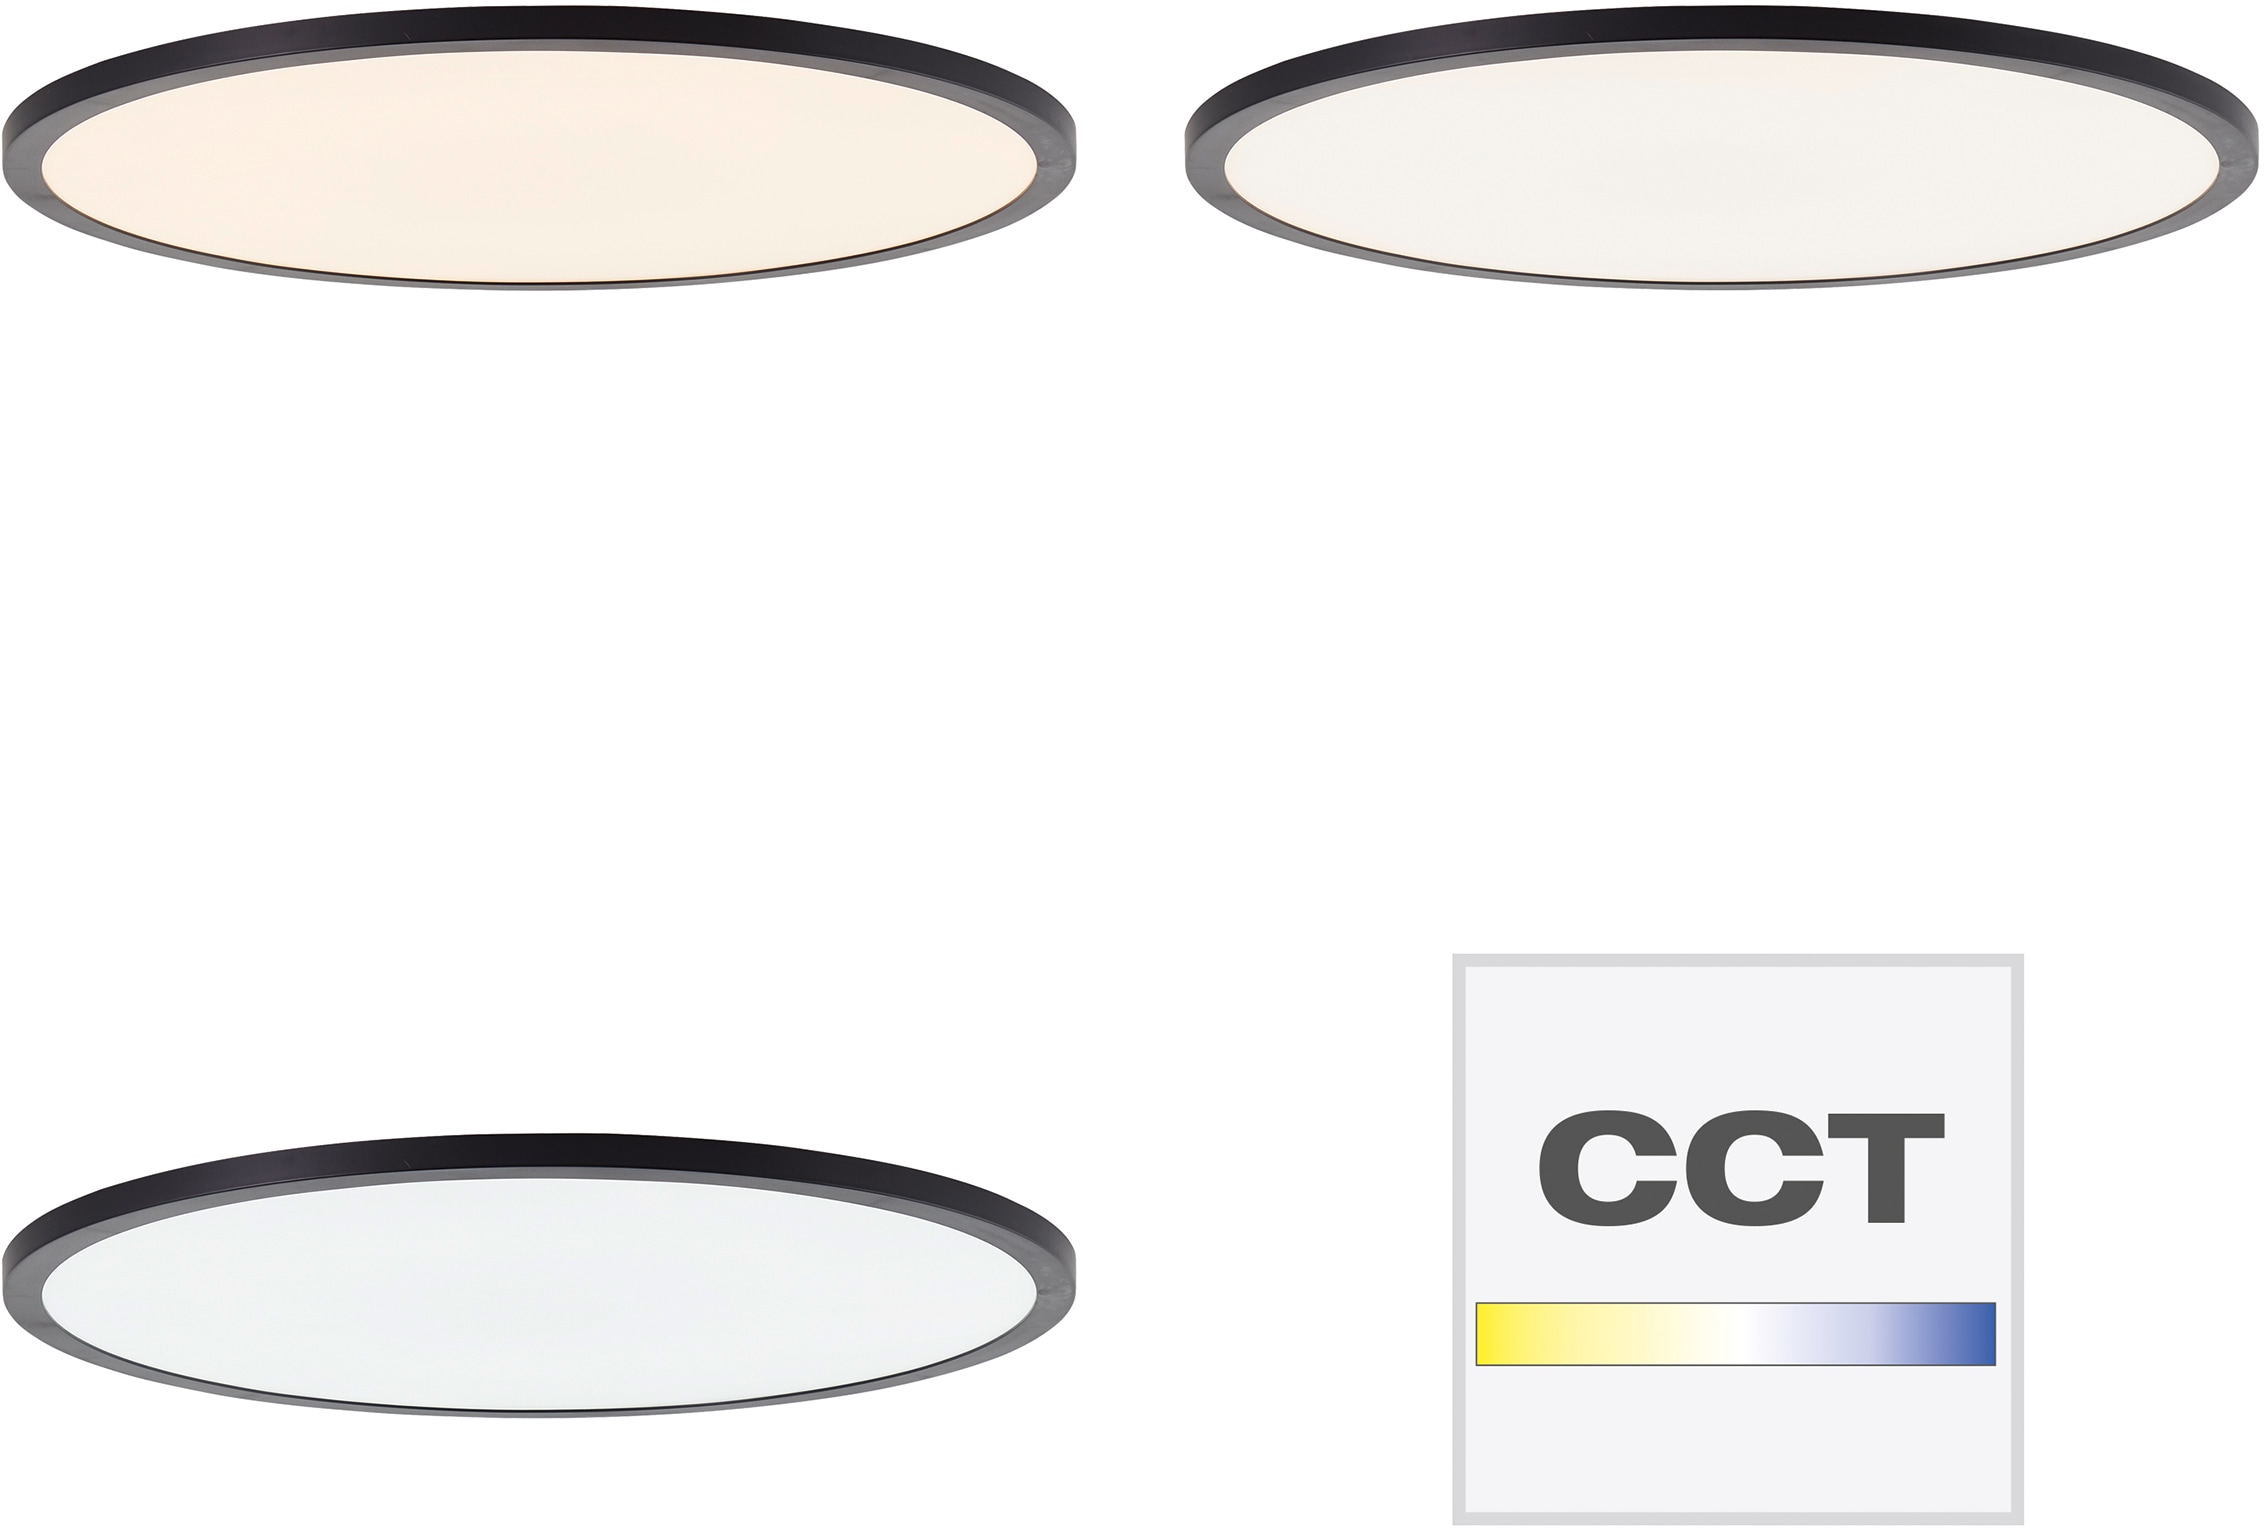 Brilliant LED Panel »Tuco«, 1 flammig-flammig, Ø 50cm, dimmbar, CCT, 3900 lm, Fernbedienung, Kunststoff, schwarz/weiß